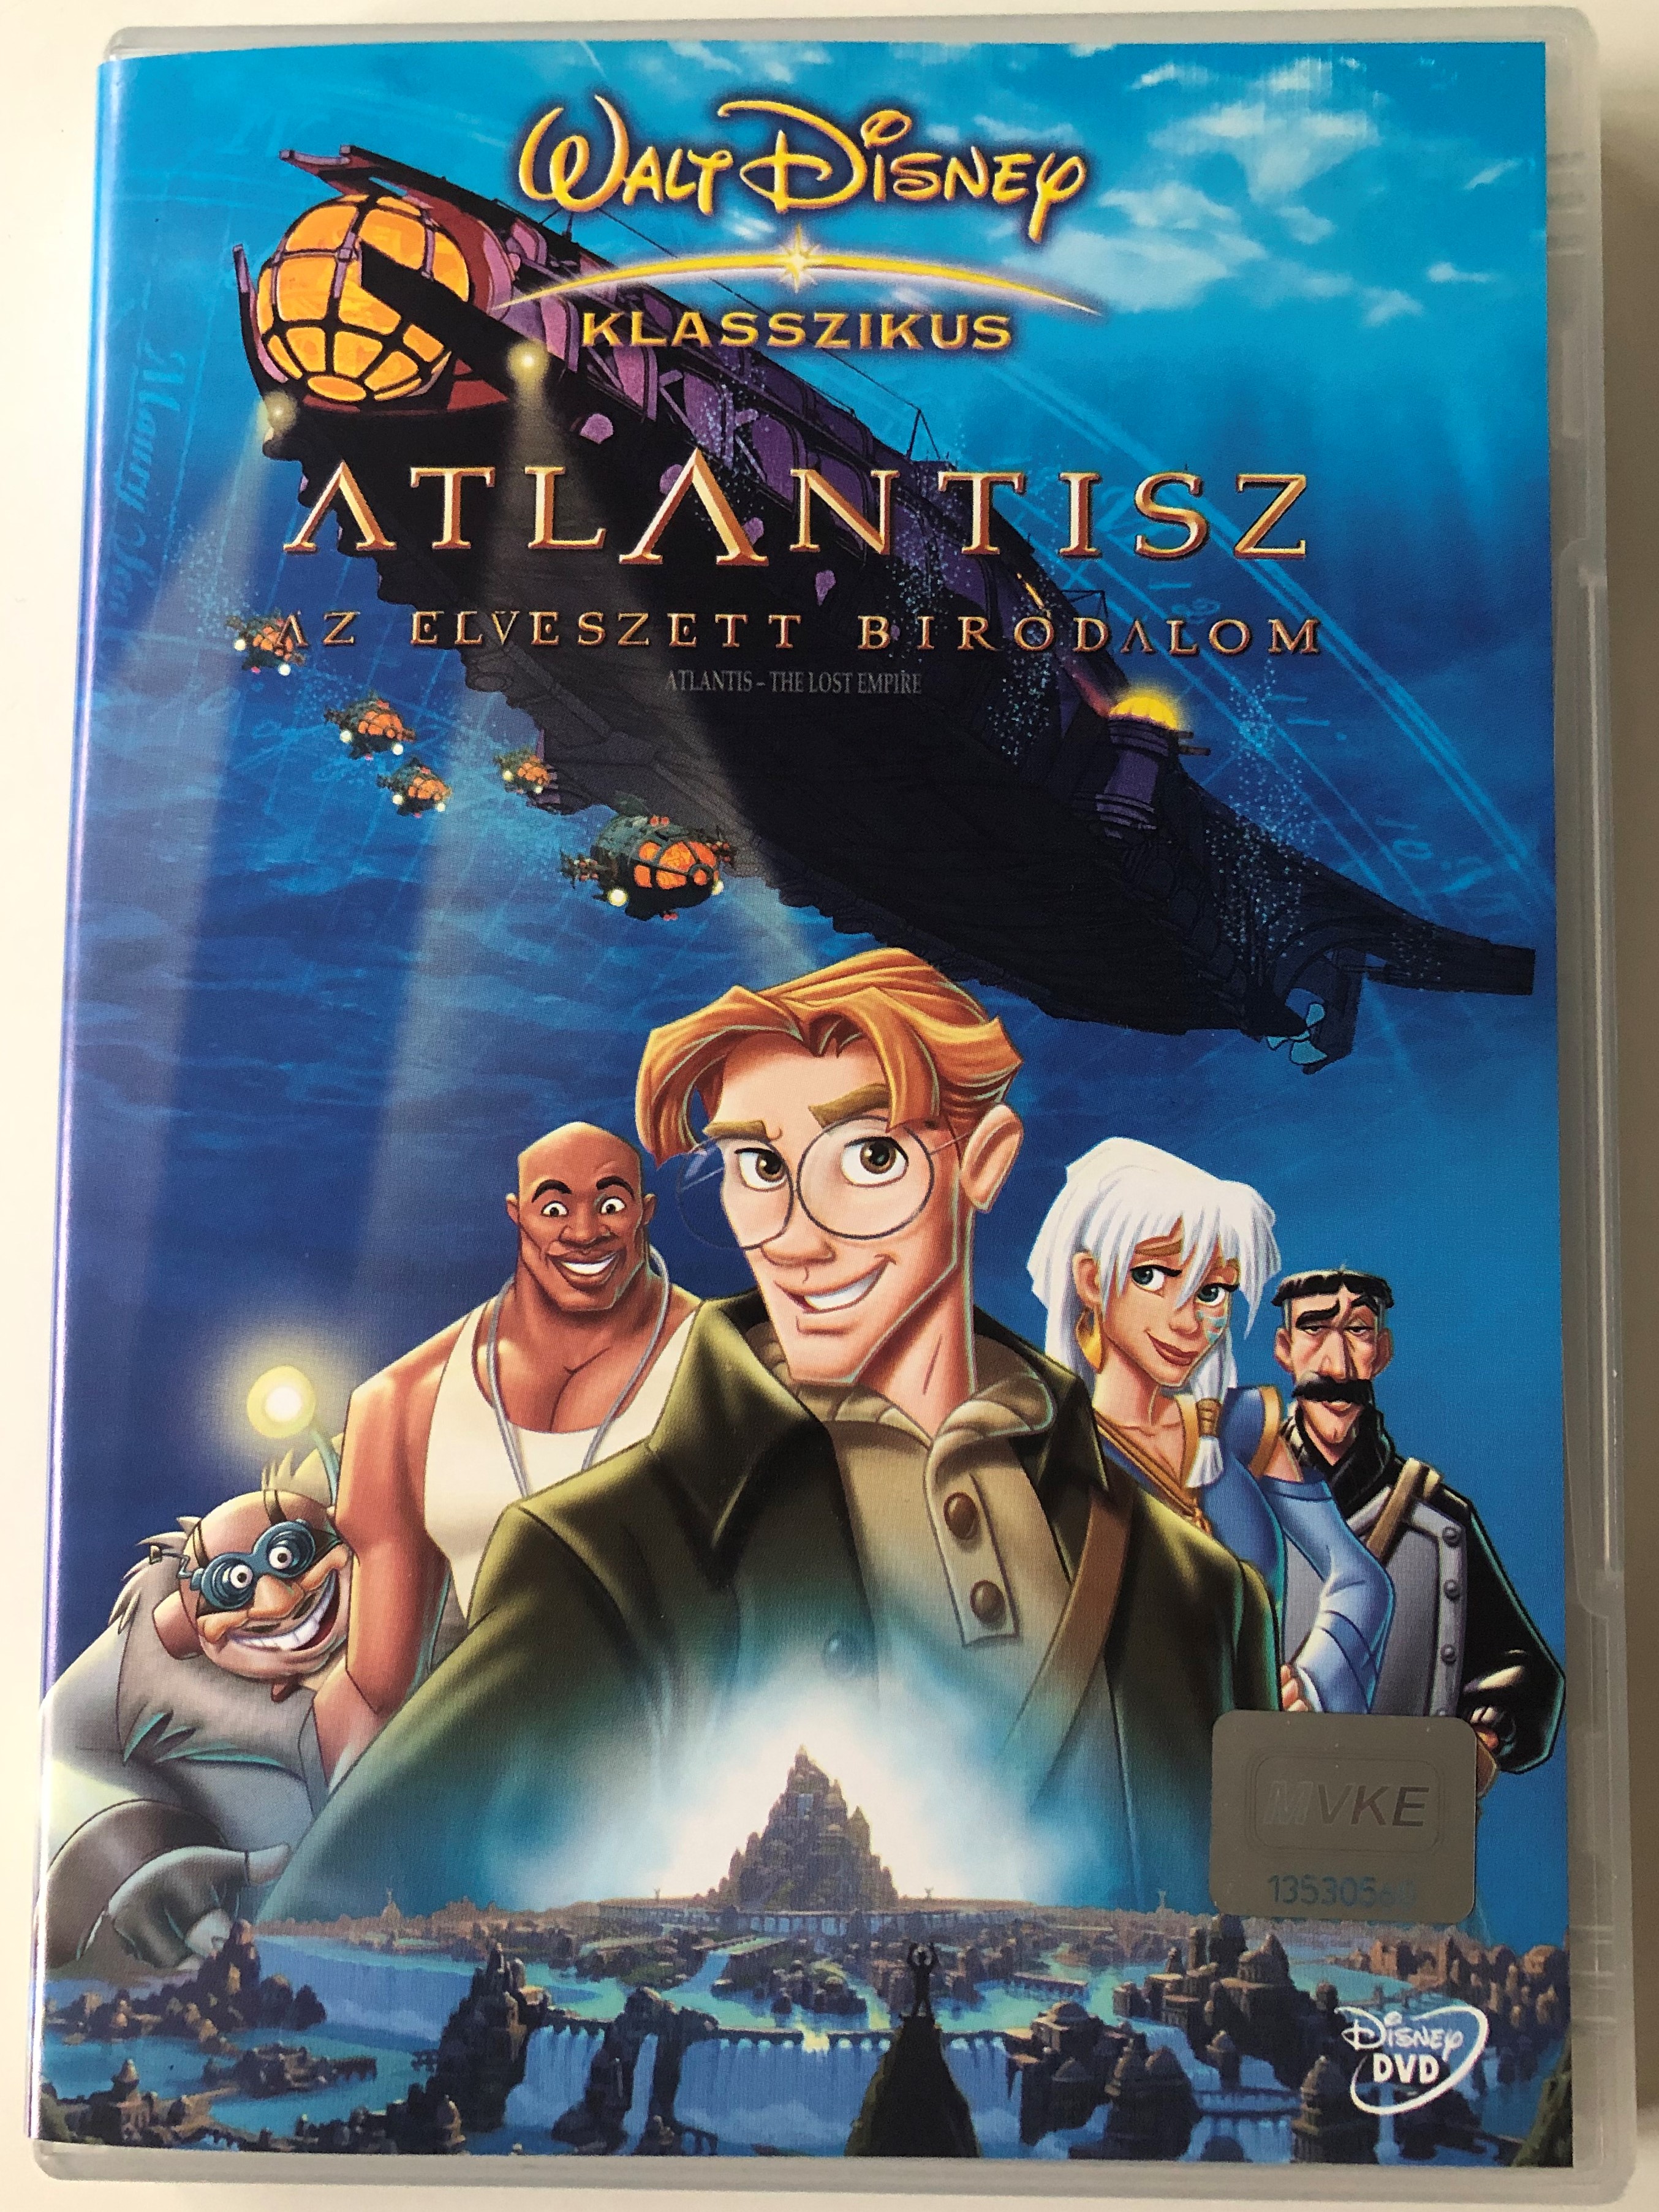 Atlantis - The Lost Empire DVD 2001 Atlantisz az elveszett birodalom /  Directed by Gary Trousdale, Kirk Wise / Starring: Michael J. Fox, James  Garner, Cree Summer, Don Novello, Phil Morris /